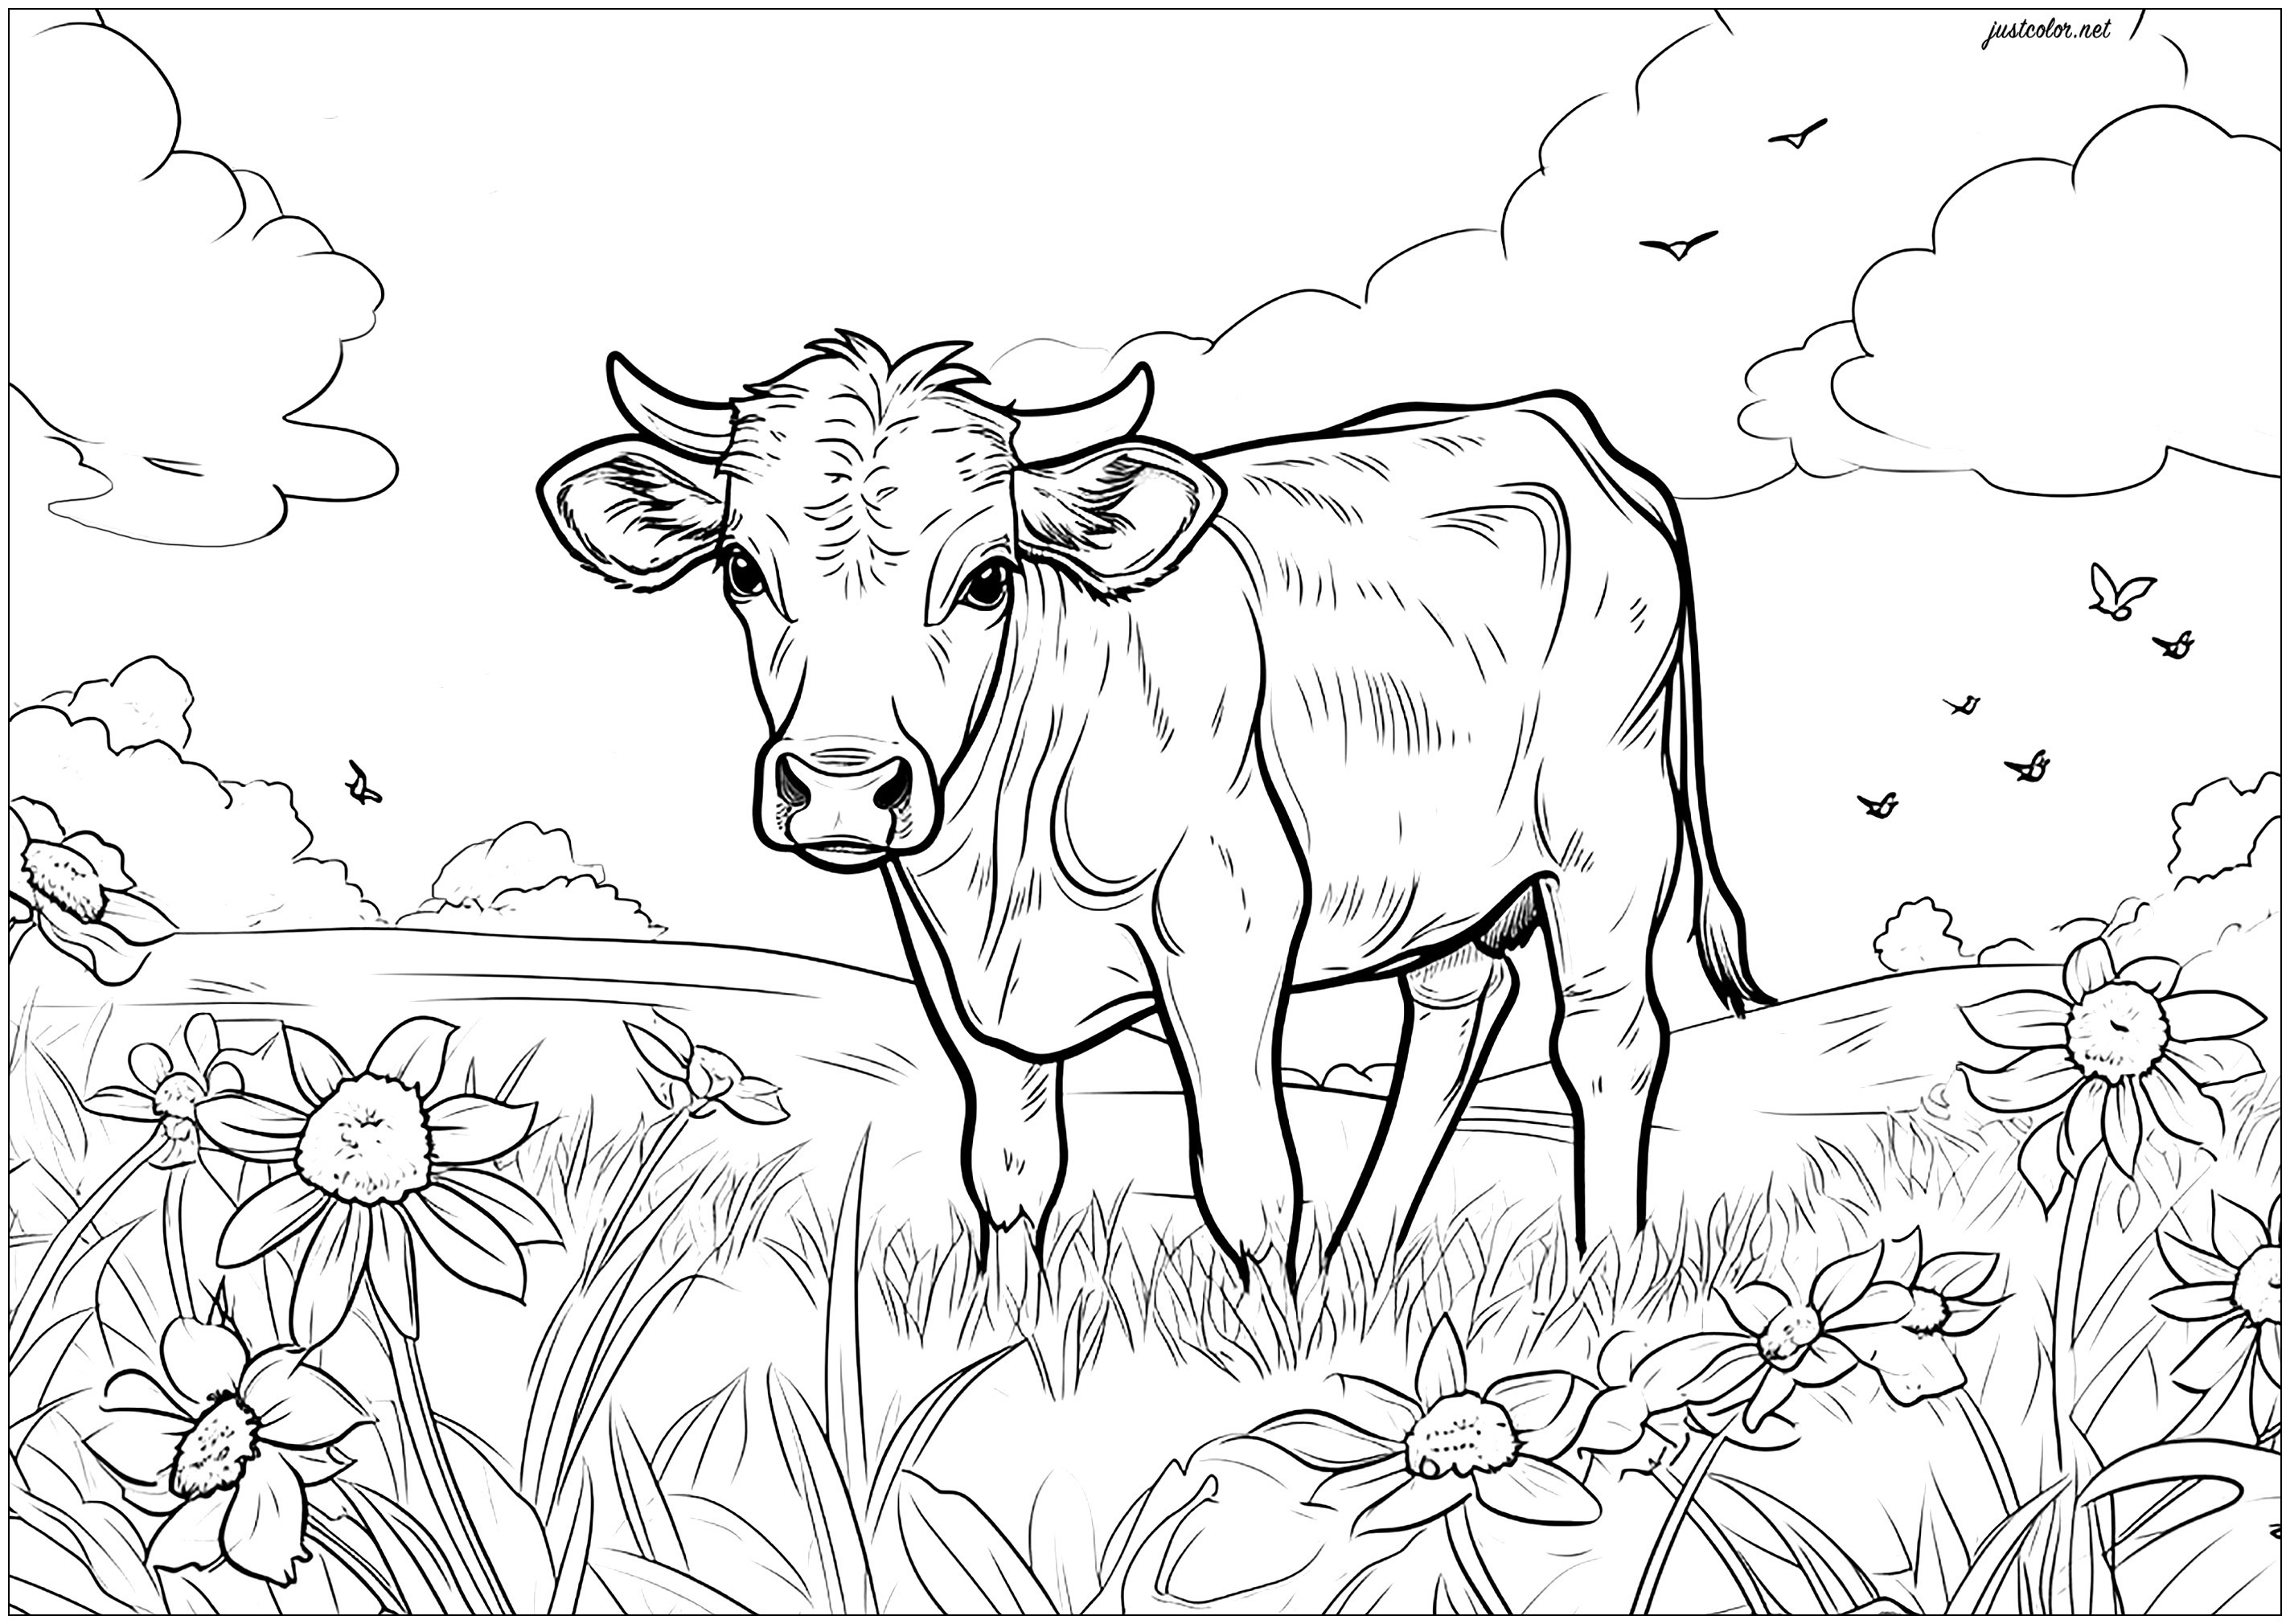 Mucca in un campo - 5